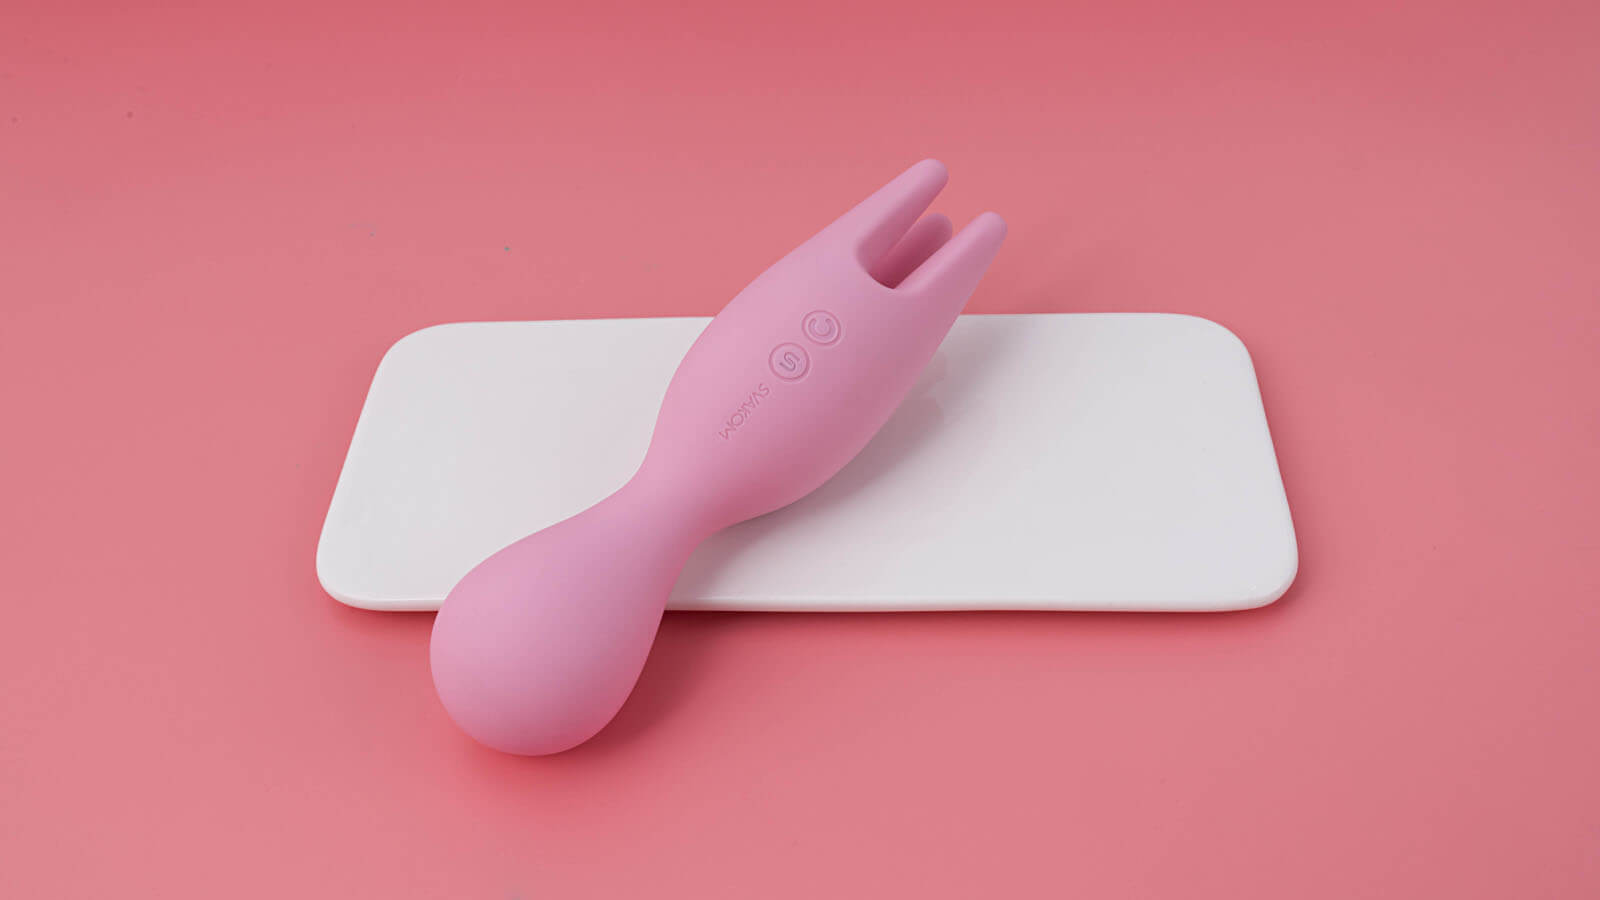 Svakom Nymph Vibrator (Pink), jedinečný vibrátor na klitoris